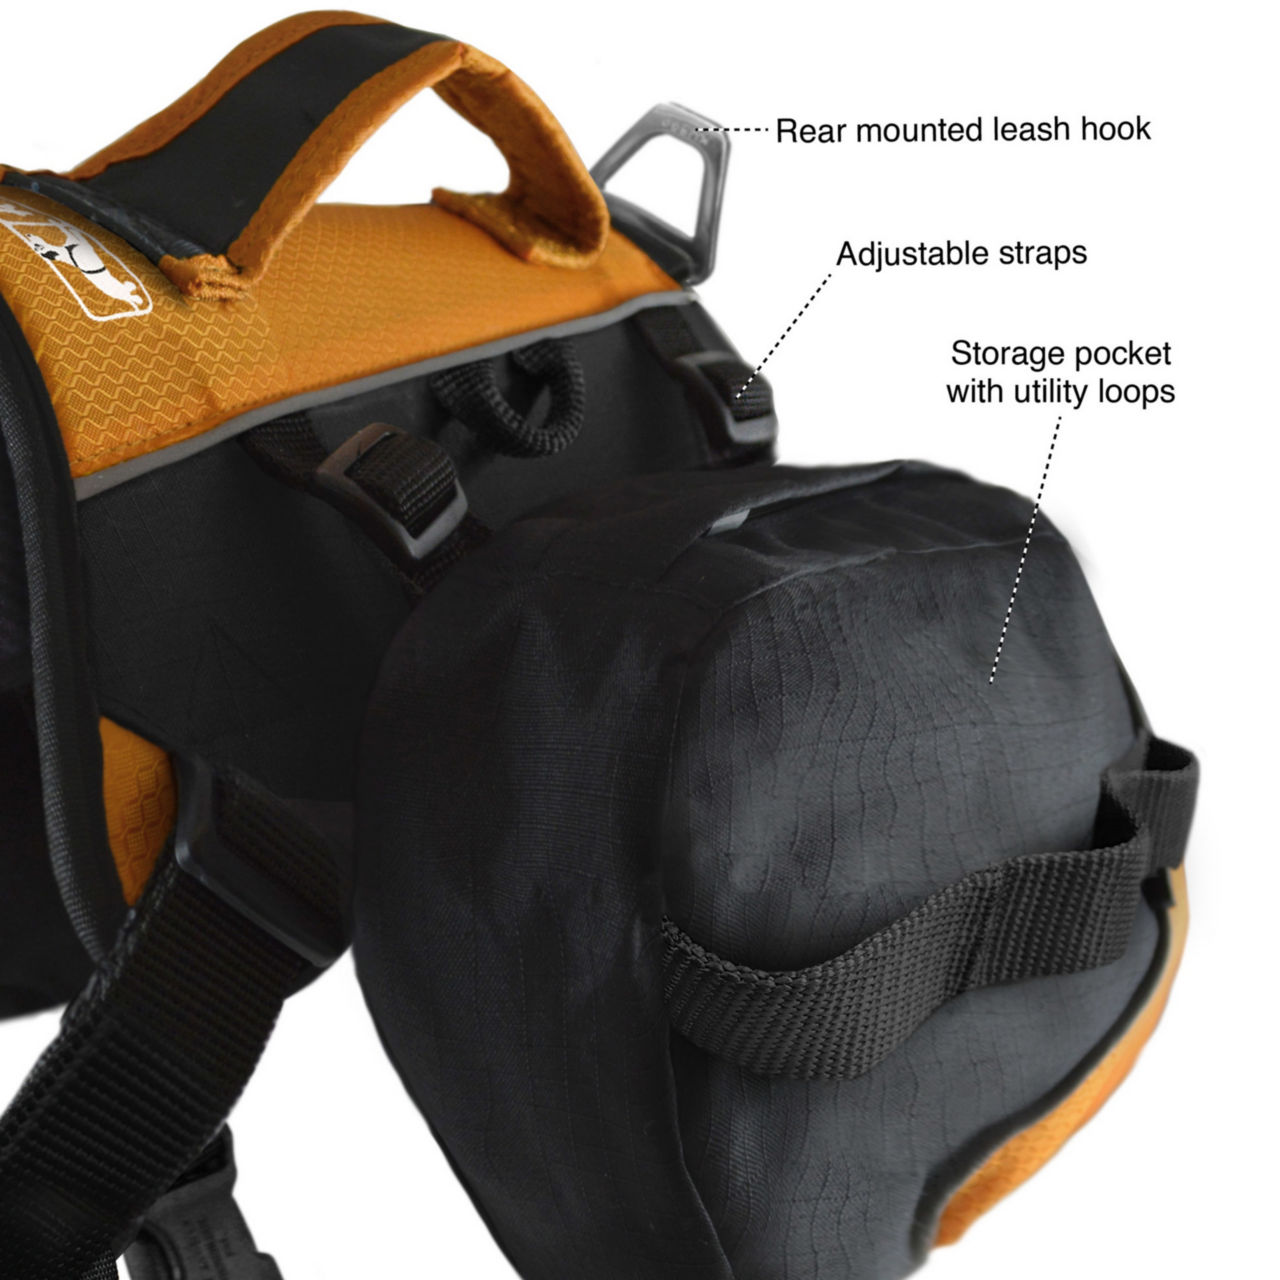 Baxter Dog Backpack - BLACK/ORANGE image number 2